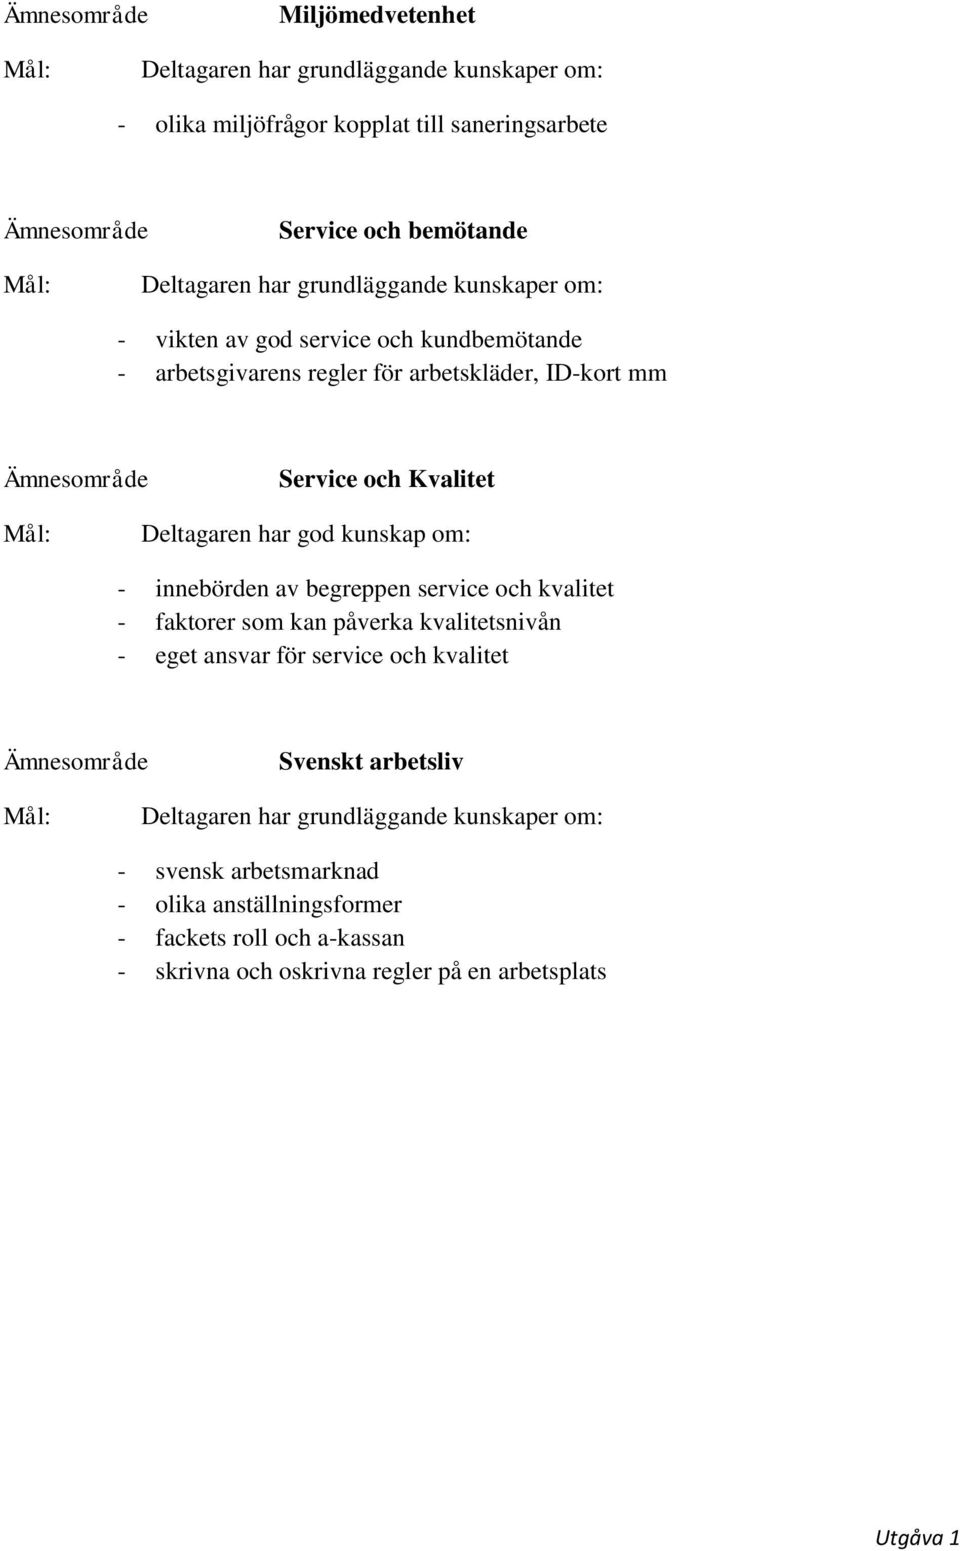 service och kvalitet - faktorer som kan påverka kvalitetsnivån - eget ansvar för service och kvalitet Svenskt